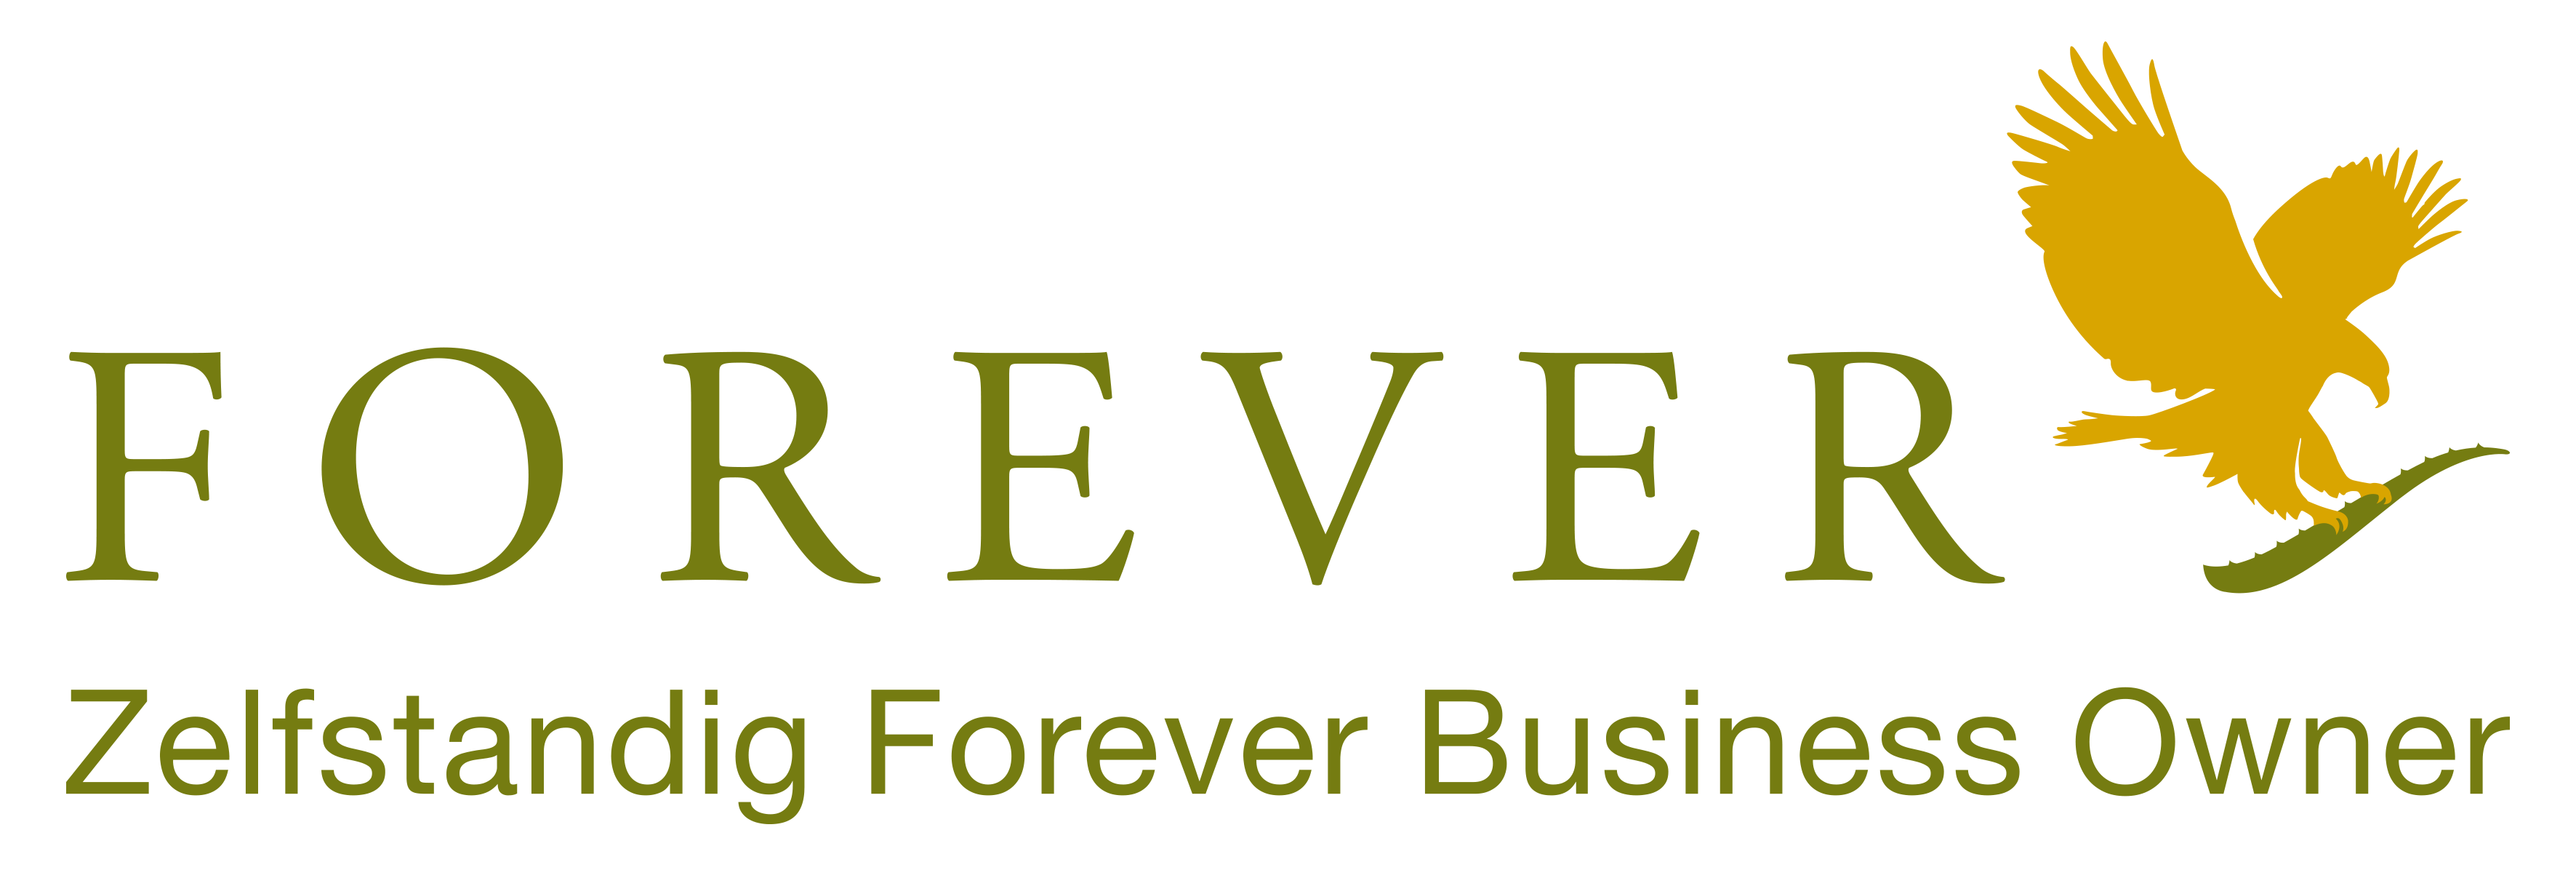 Forever Aloë vera levert Forever producten aan klanten in Benelus en Frankrijk als Independent Business Owner voor Forever Living. Koop jou producten van Forever Living in Belgie, Nederland, Luxemburg en Frankrijk